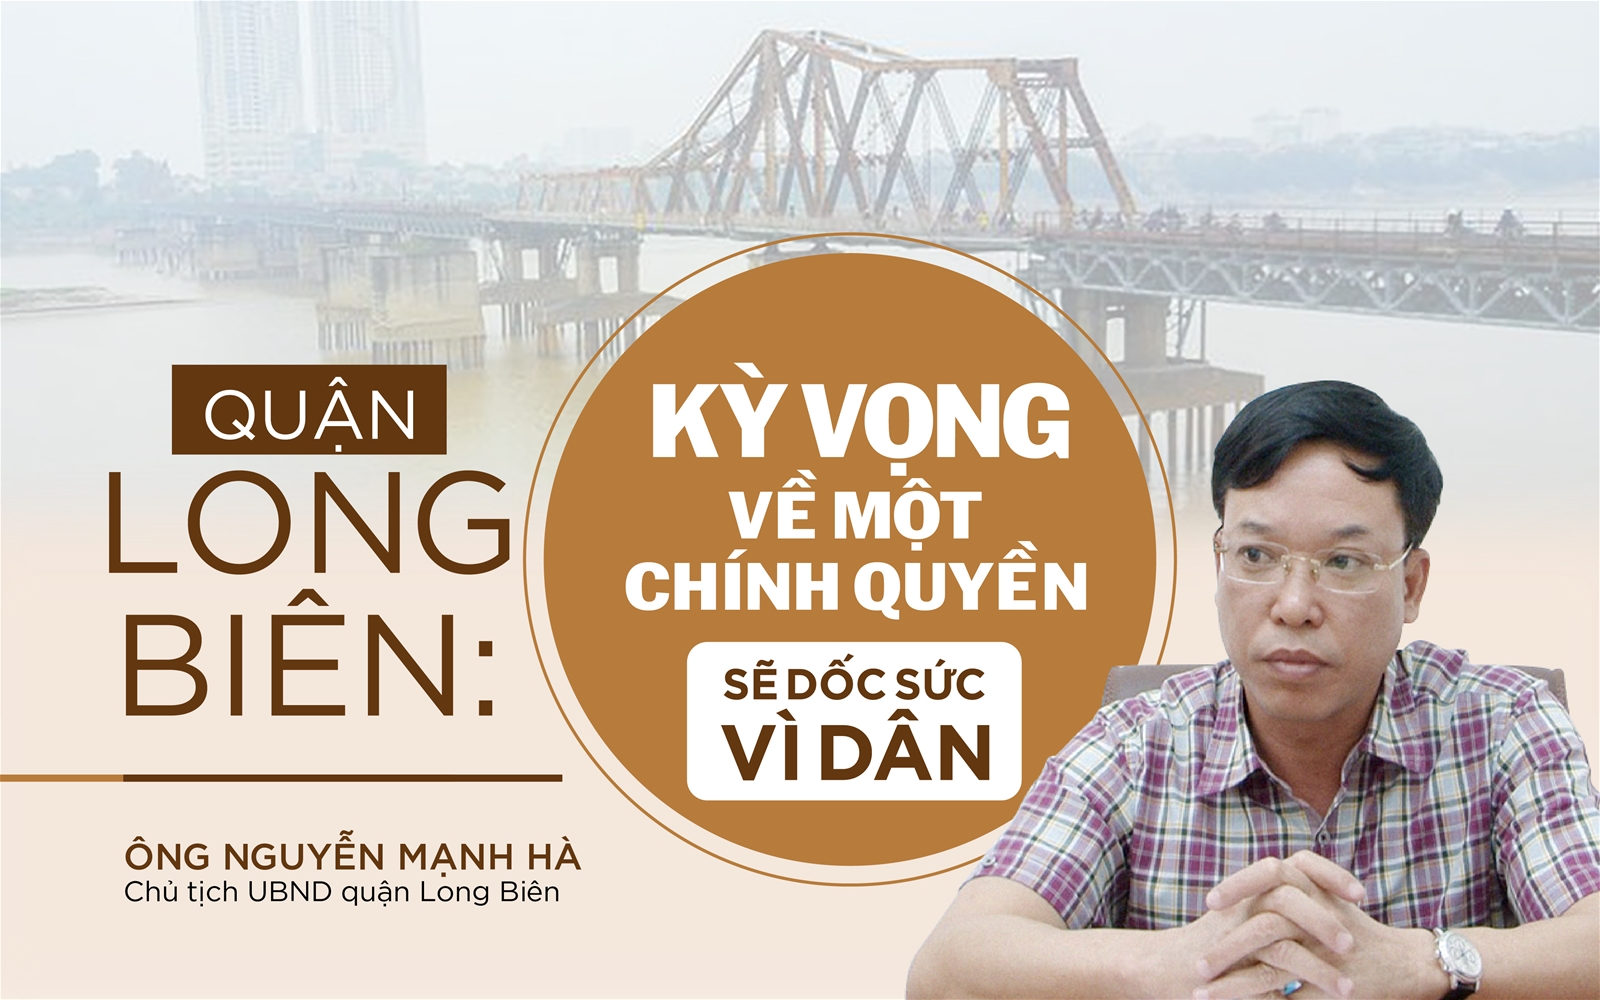 Quận Long Biên: Kỳ vọng về một chính quyền sẽ dốc sức vì dân